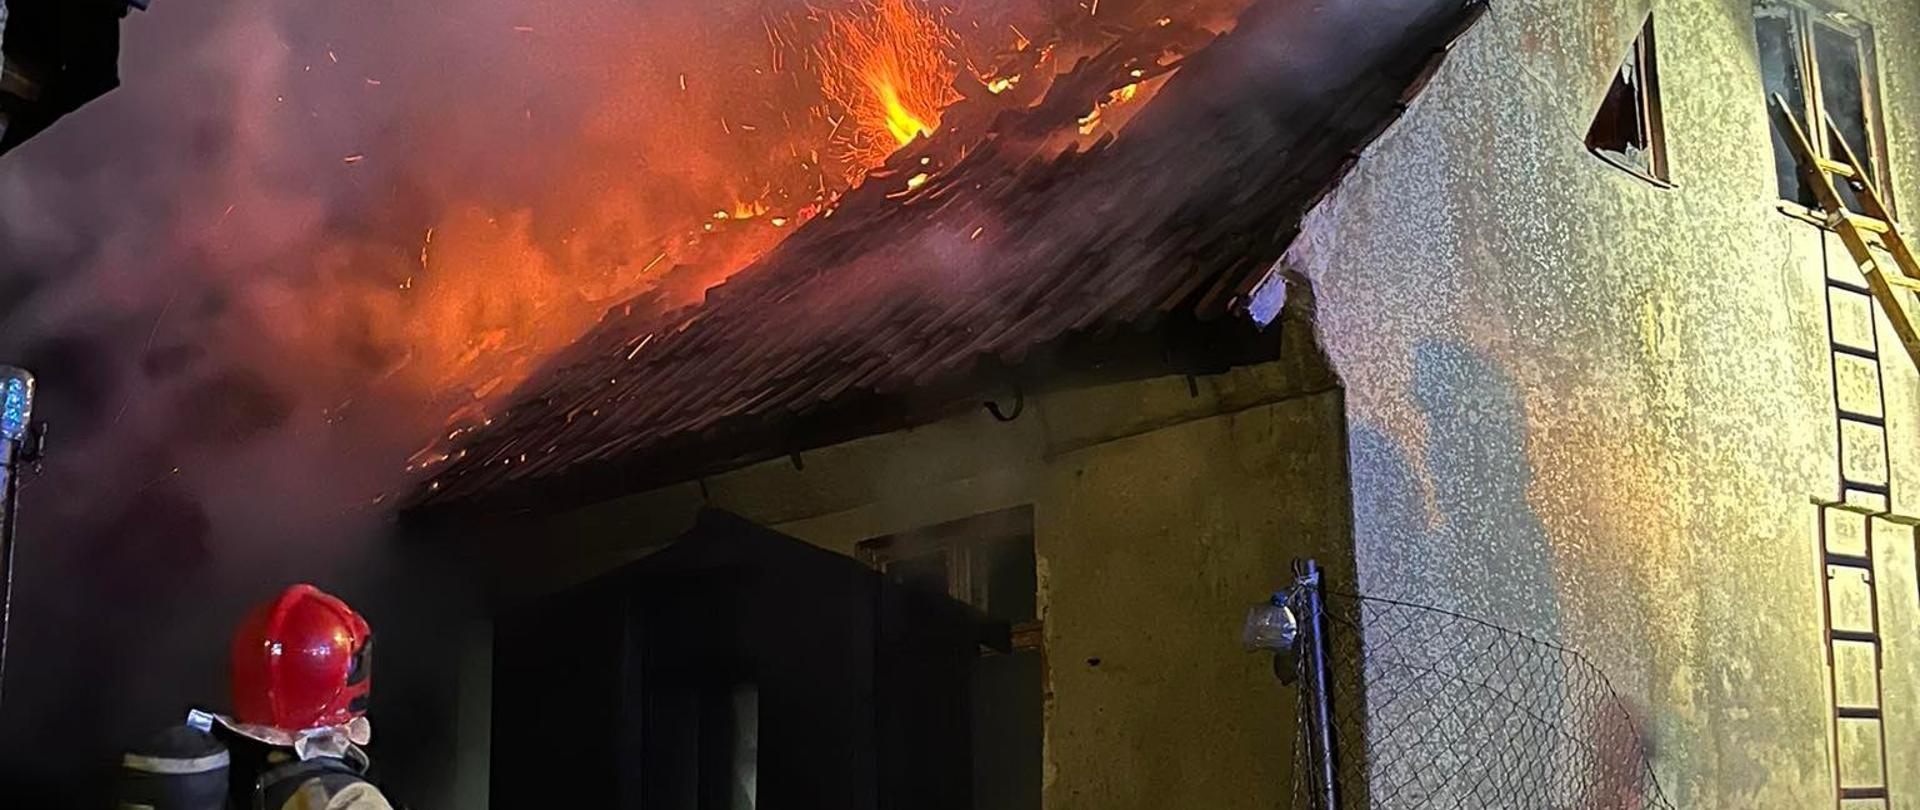 Na zdjęciu widać strażaka podającego wodę na płonący dach budynku